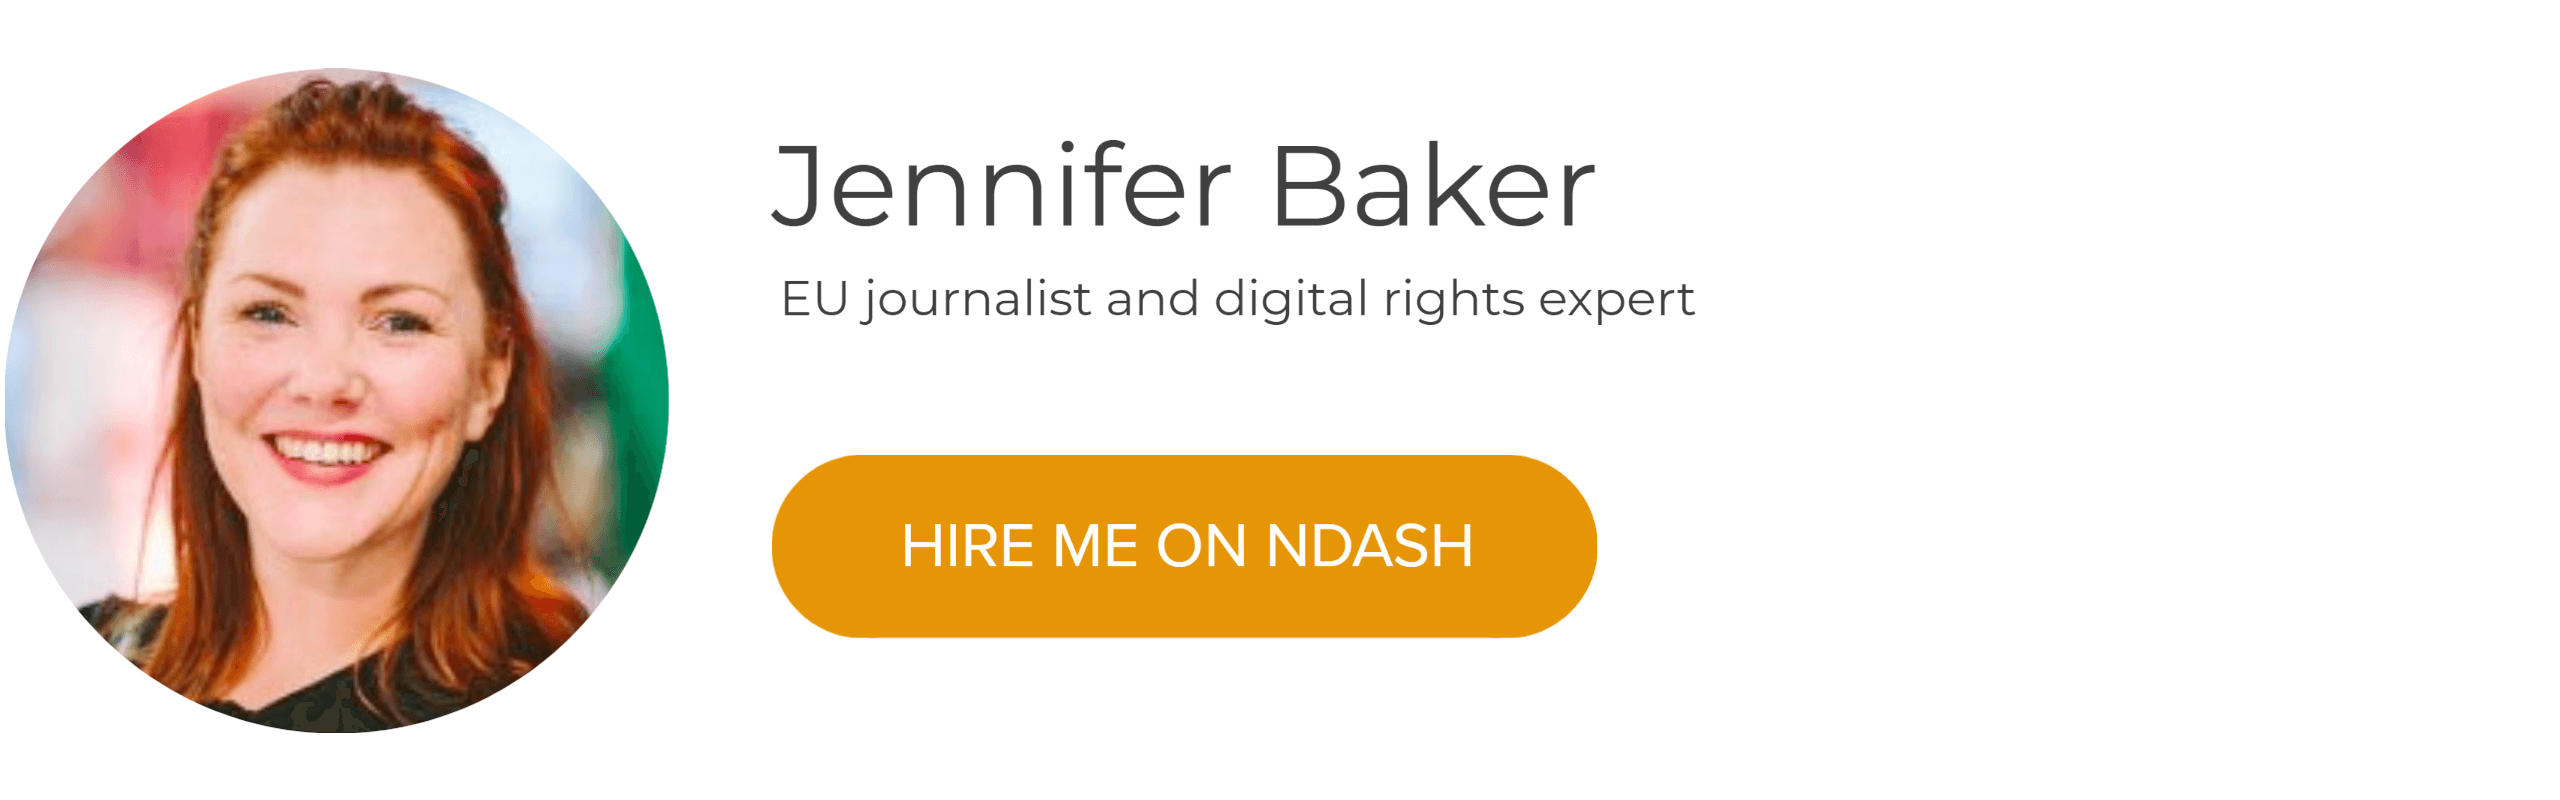 Jennifer Baker: EU Journalist & Digital Rights Expert